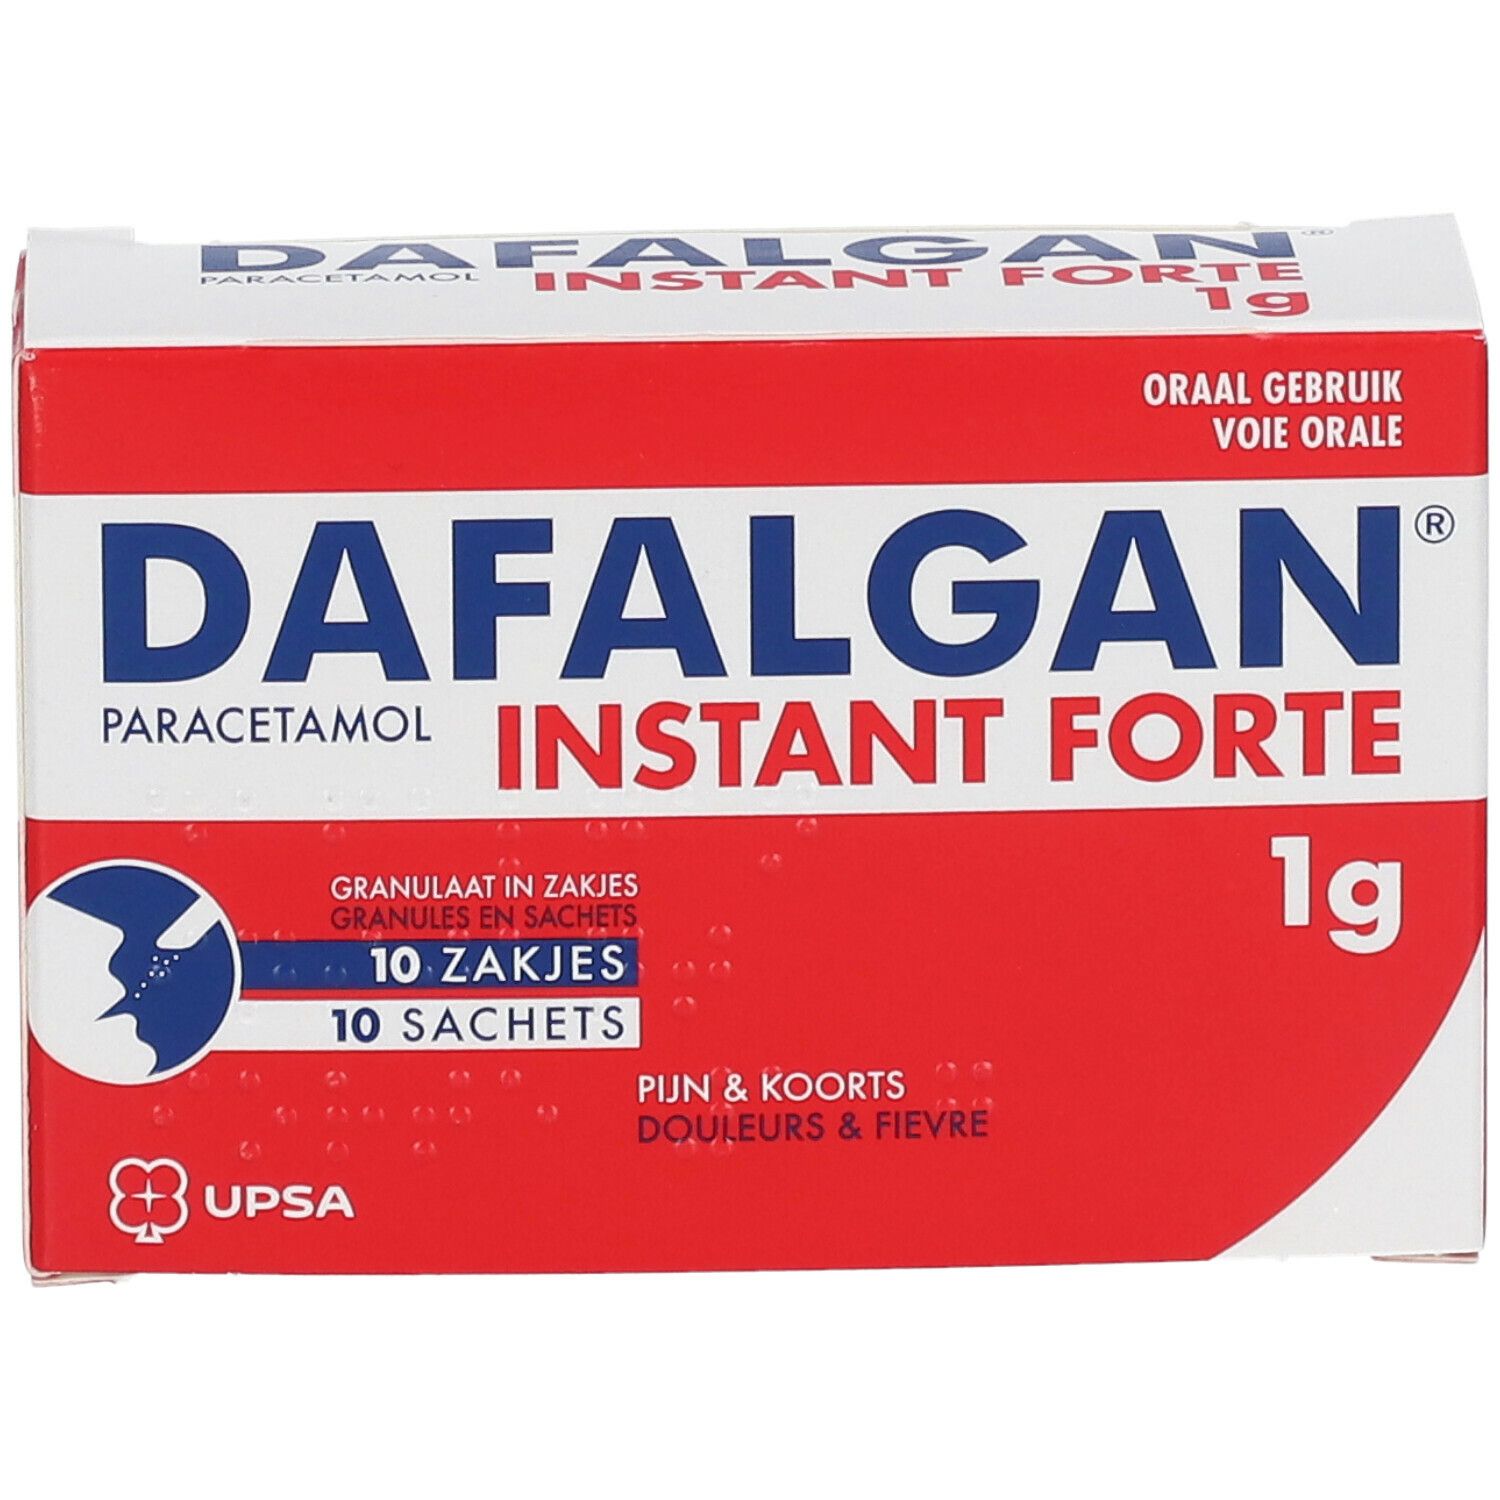 Dafalgan Instant Forte 1g